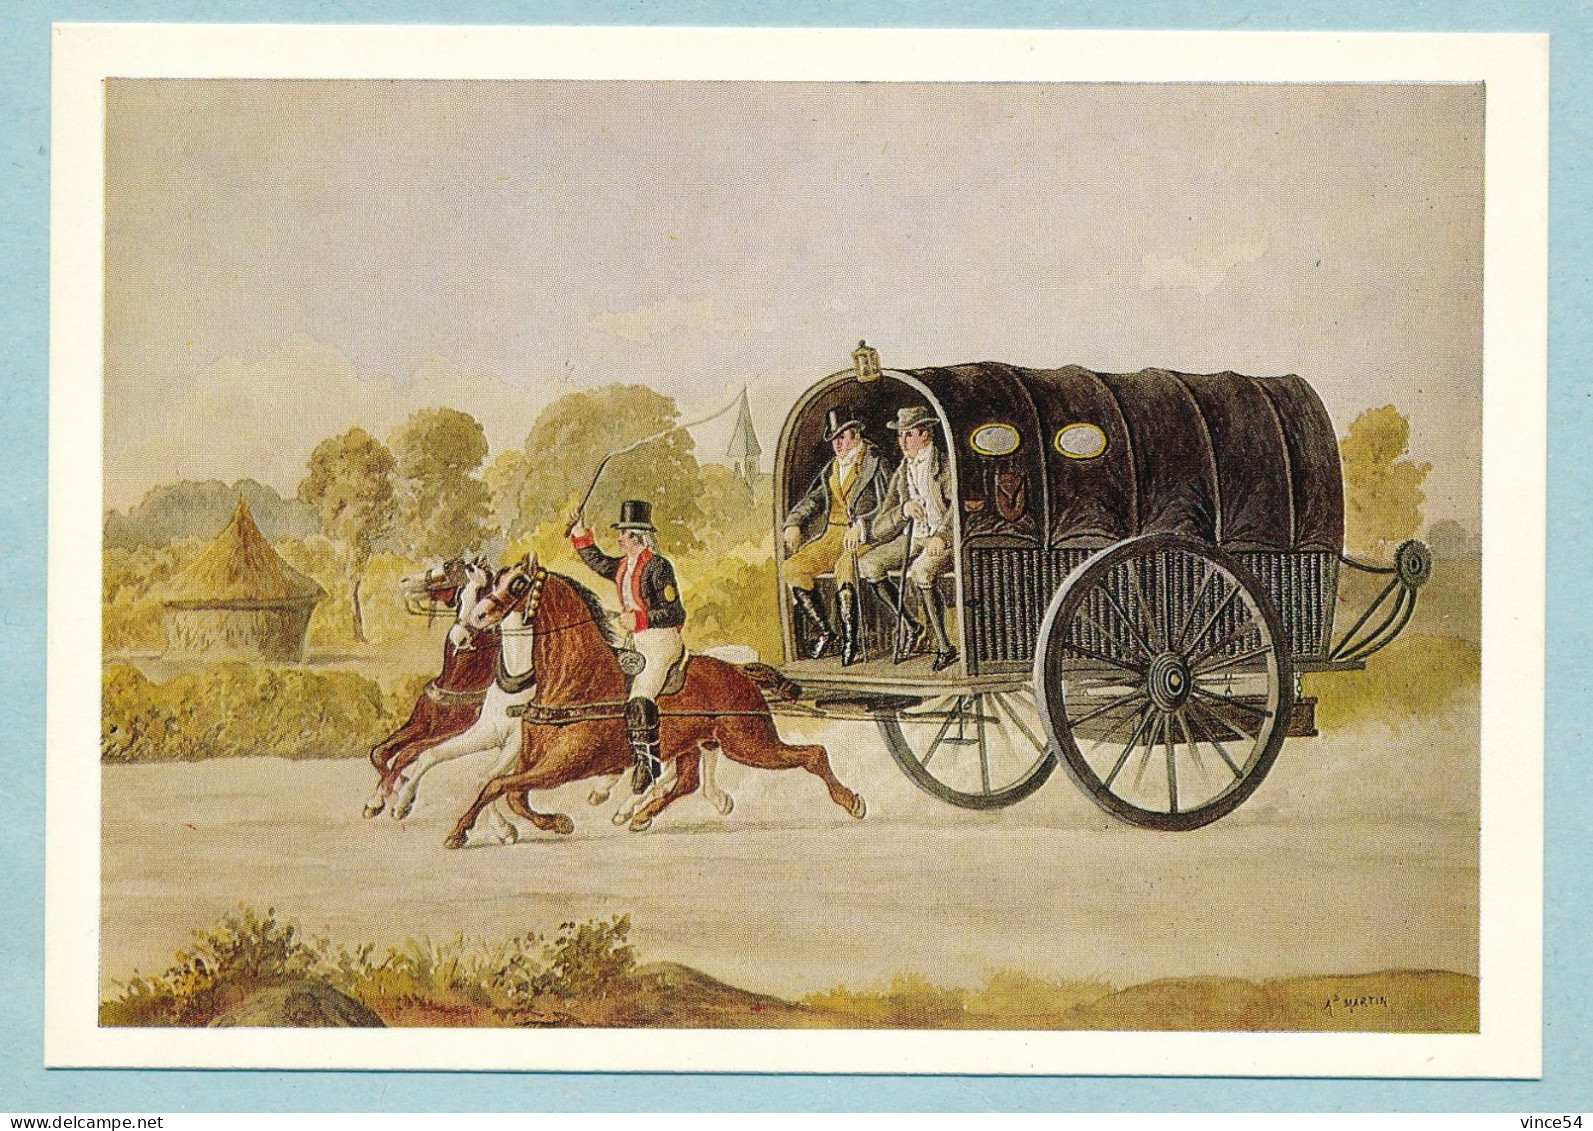 27 Avril 1796 Malle-poste Transportant Courrier Postal Et Voyageurs En Service Lors De L'Affaire Du Courrier De Lyon - Poste & Facteurs